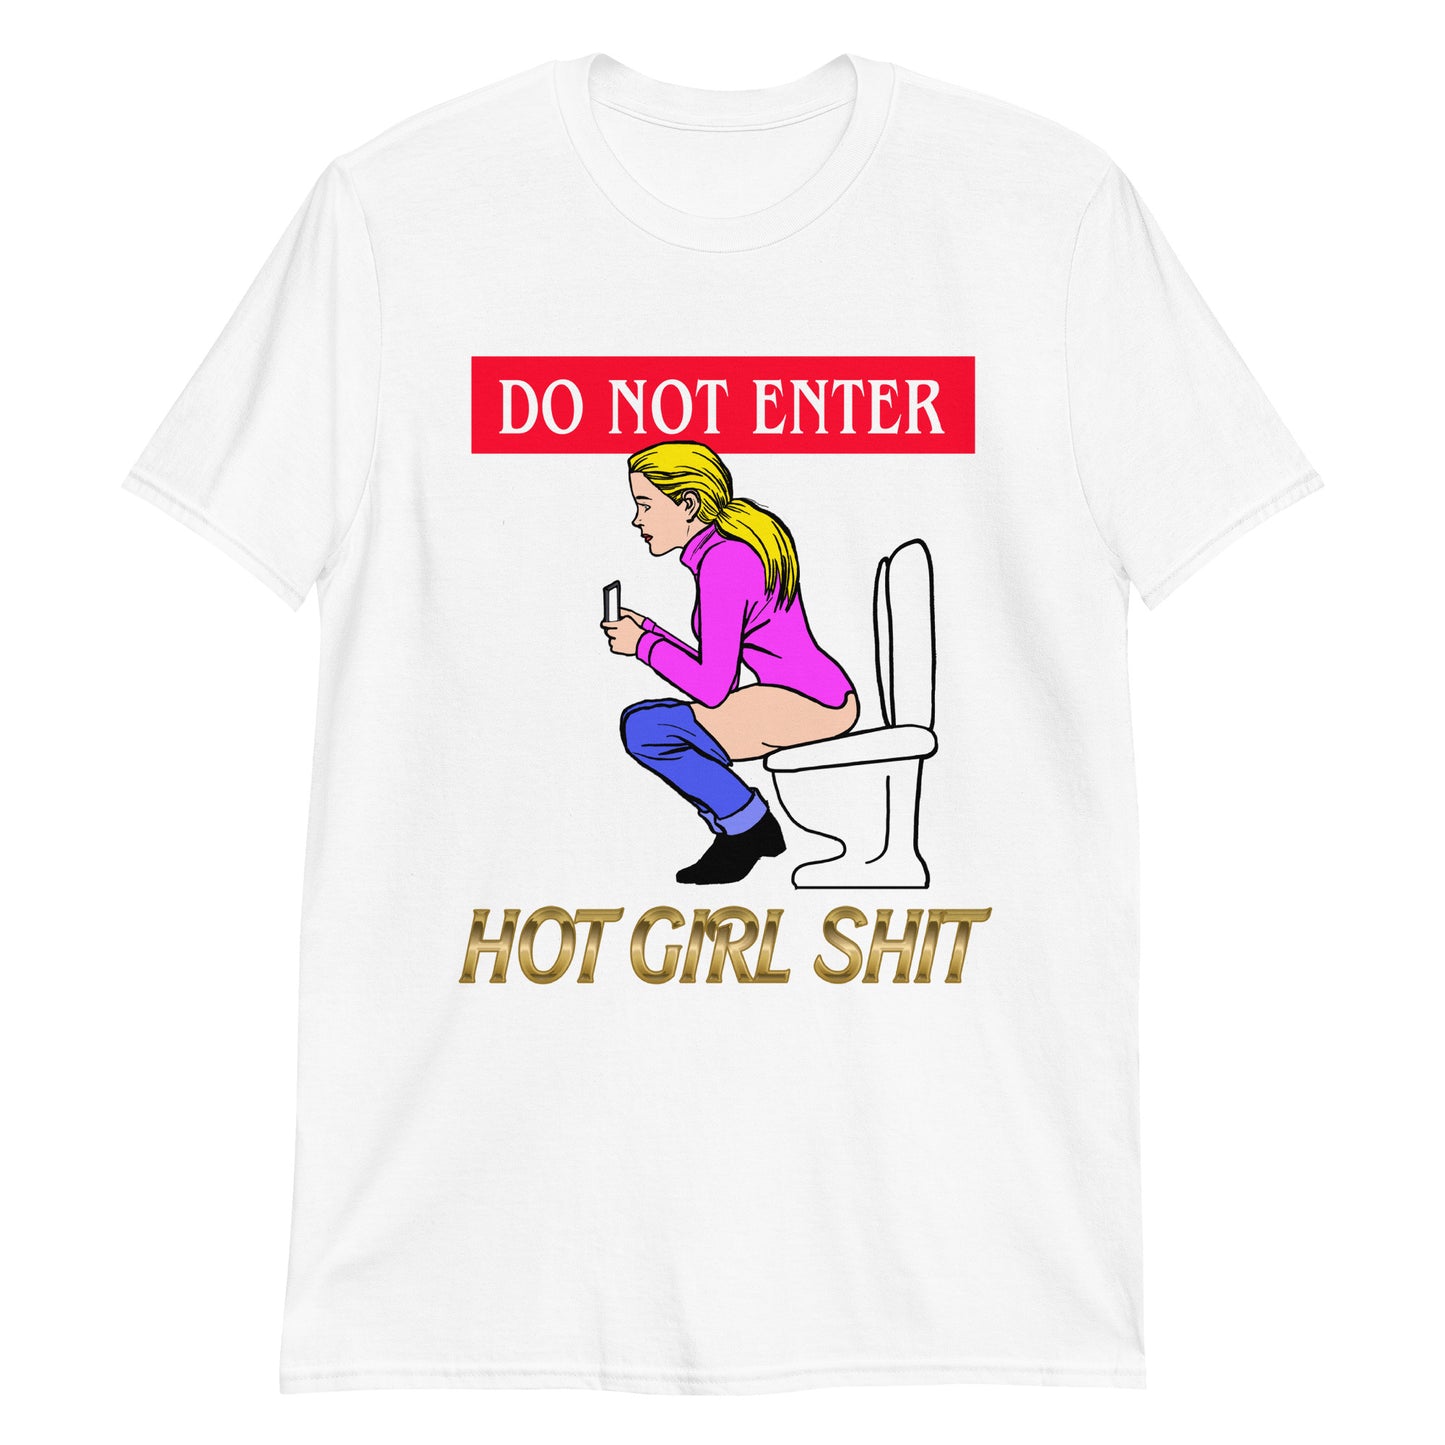 Do Not Enter, Hot Girl Shit.